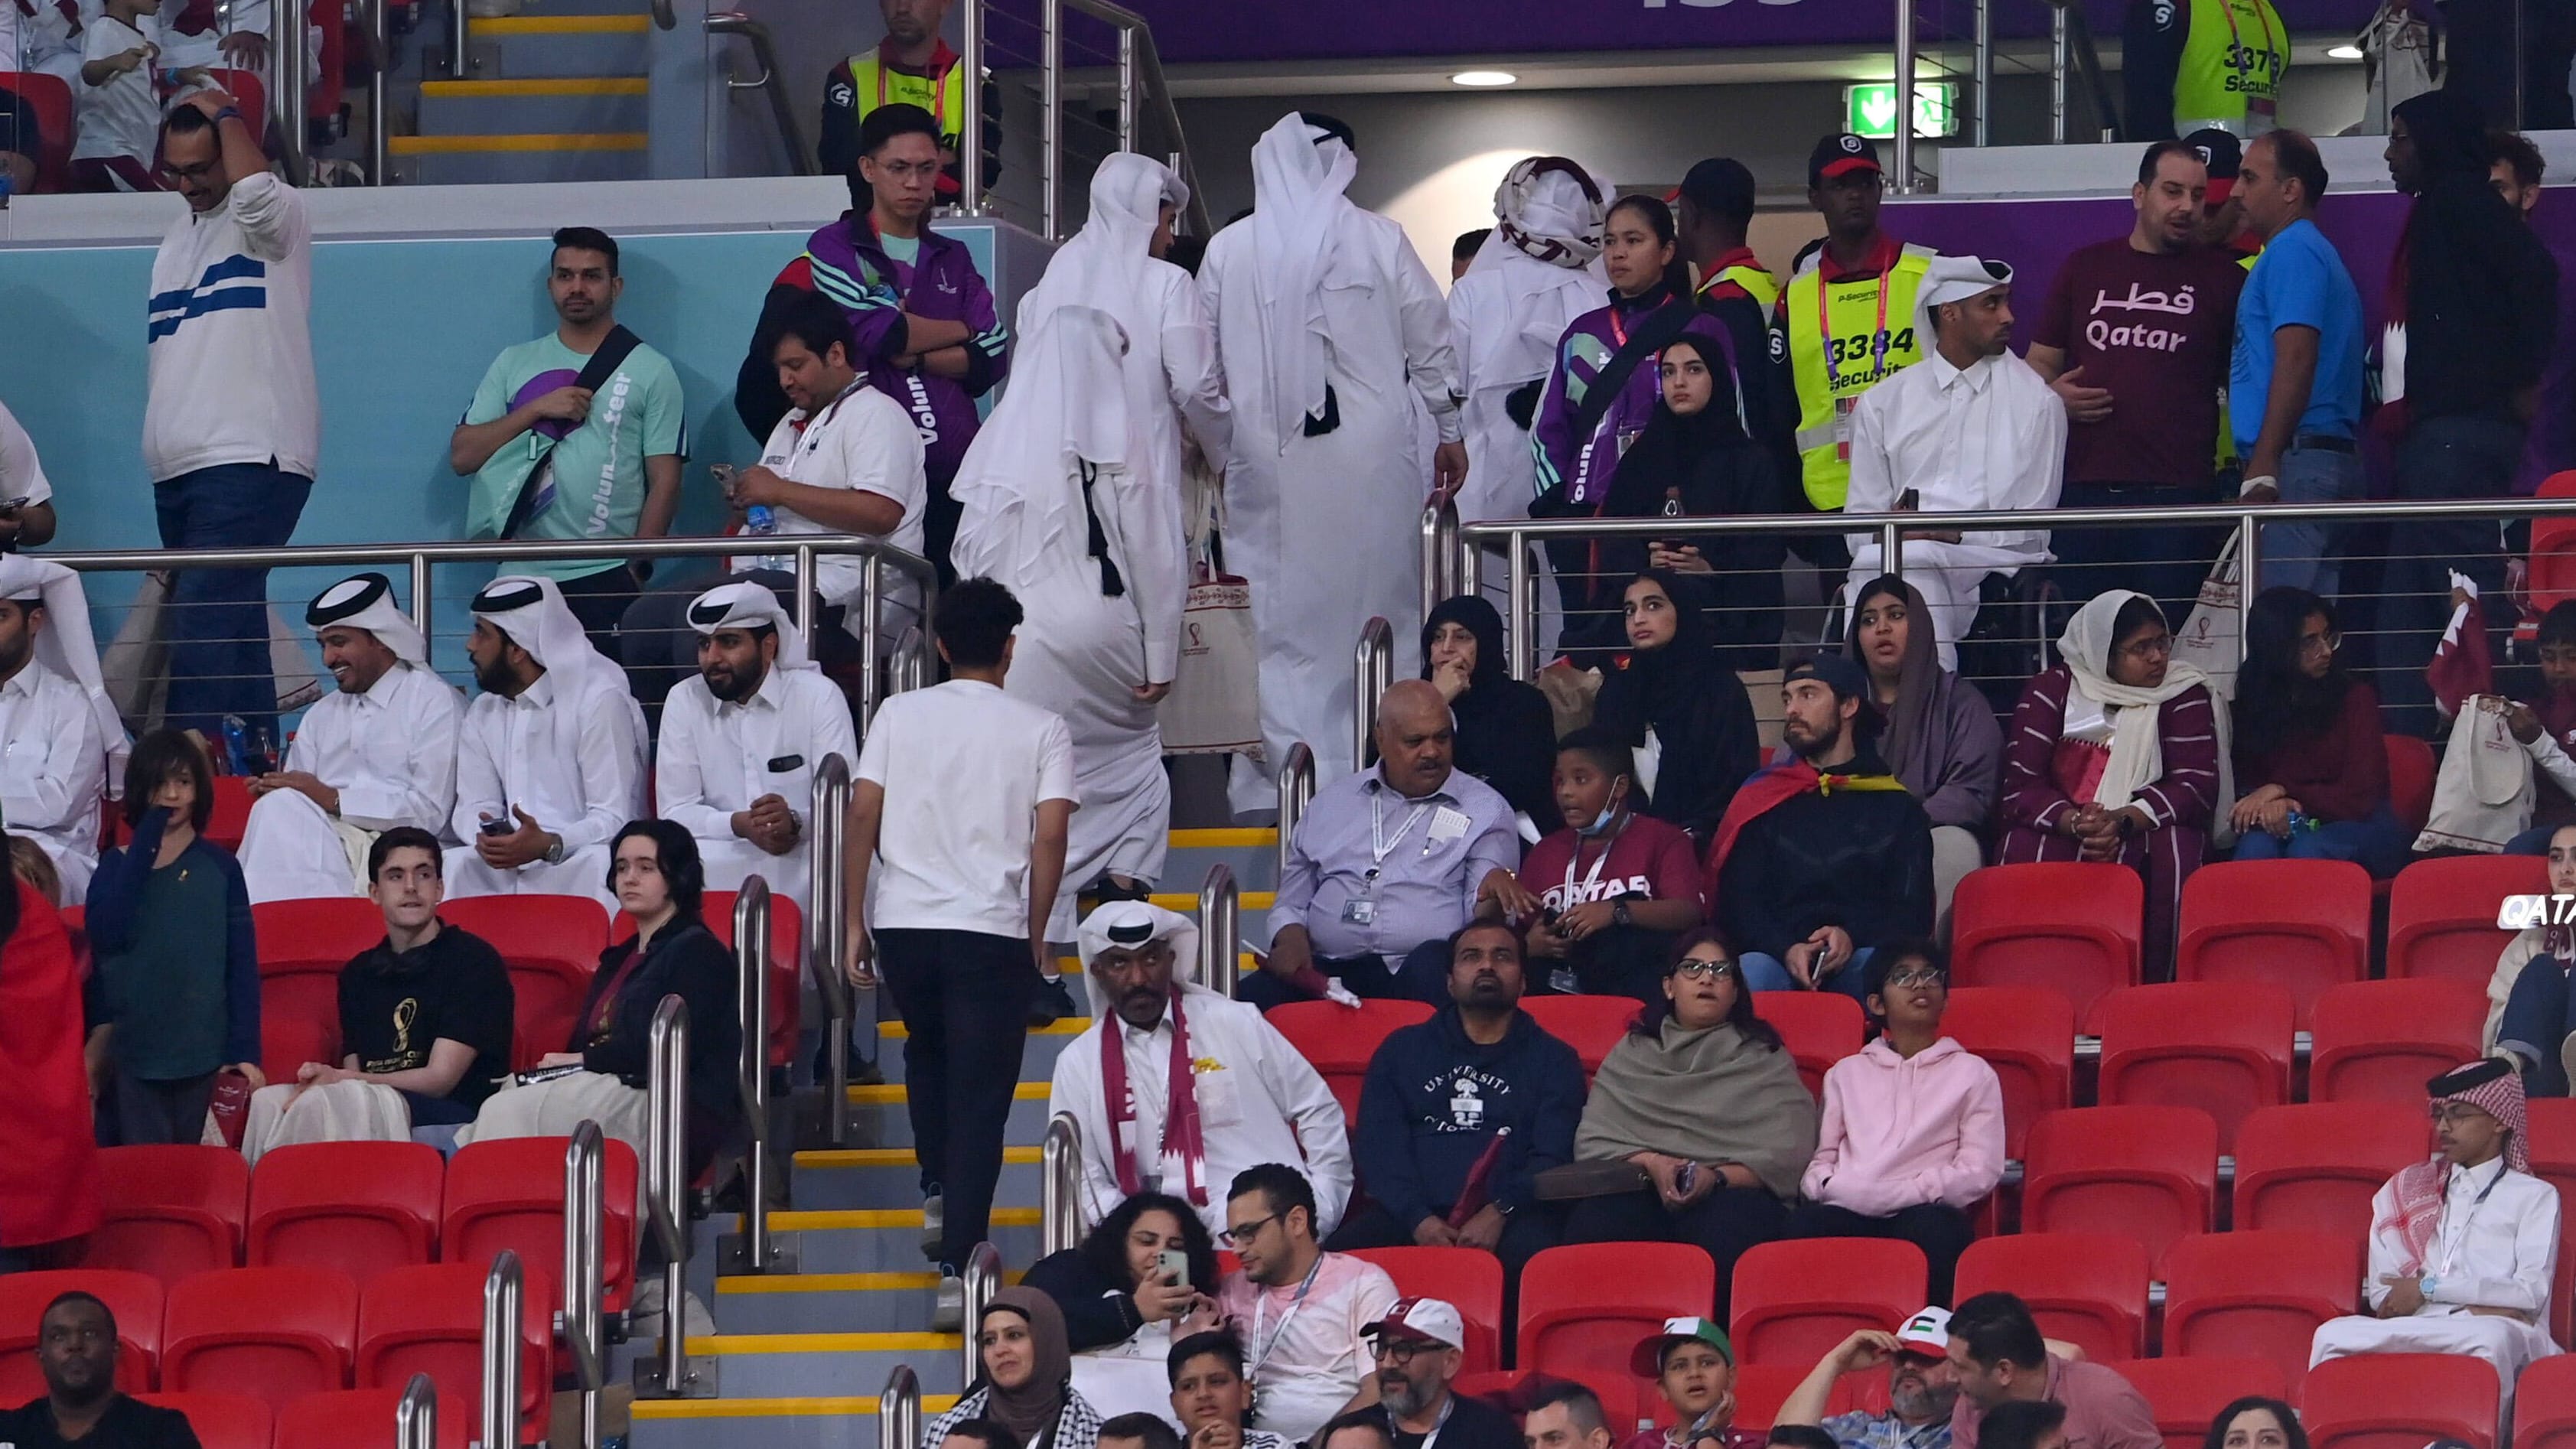 WM 2002 in Katar: Fans verlassen frühzeitig das Stadion